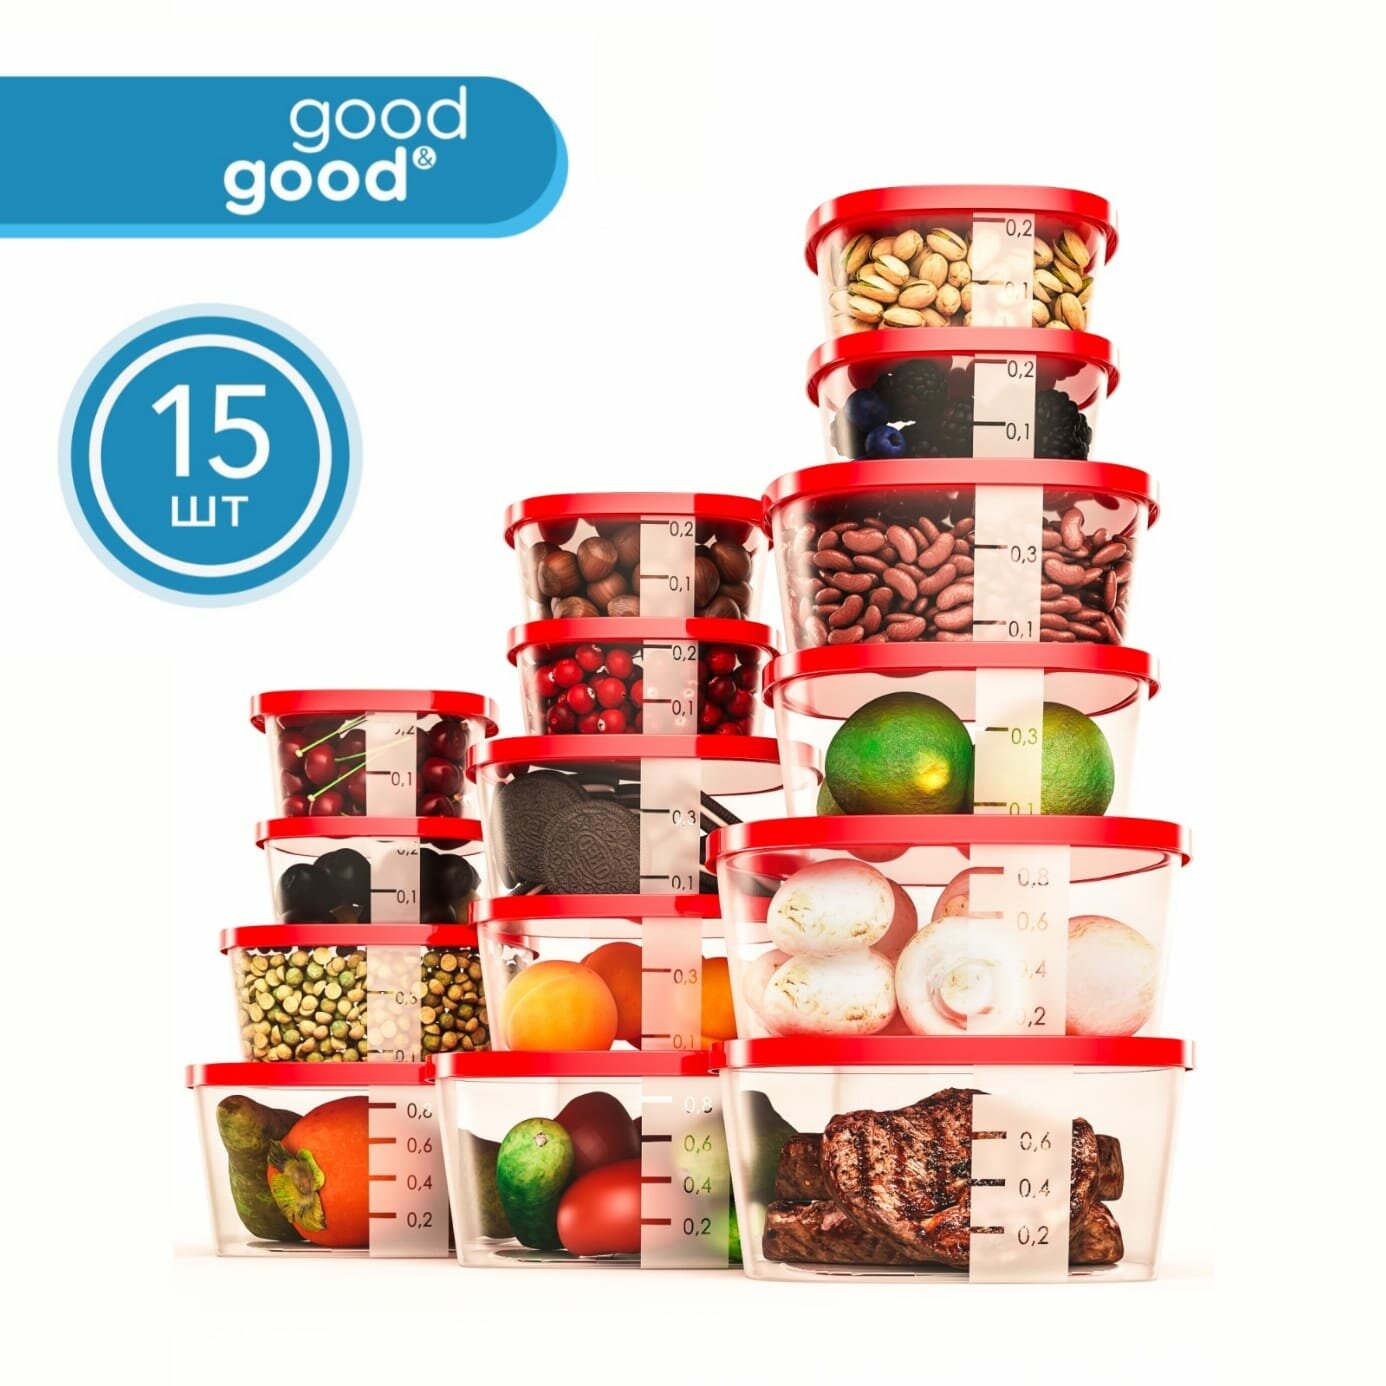 Контейнер для еды и хранения продуктов 15 шт good&good набор контейнеров 900 мл х 4 шт; 500 мл х 5 шт; 230 мл х 6 шт красные крышки